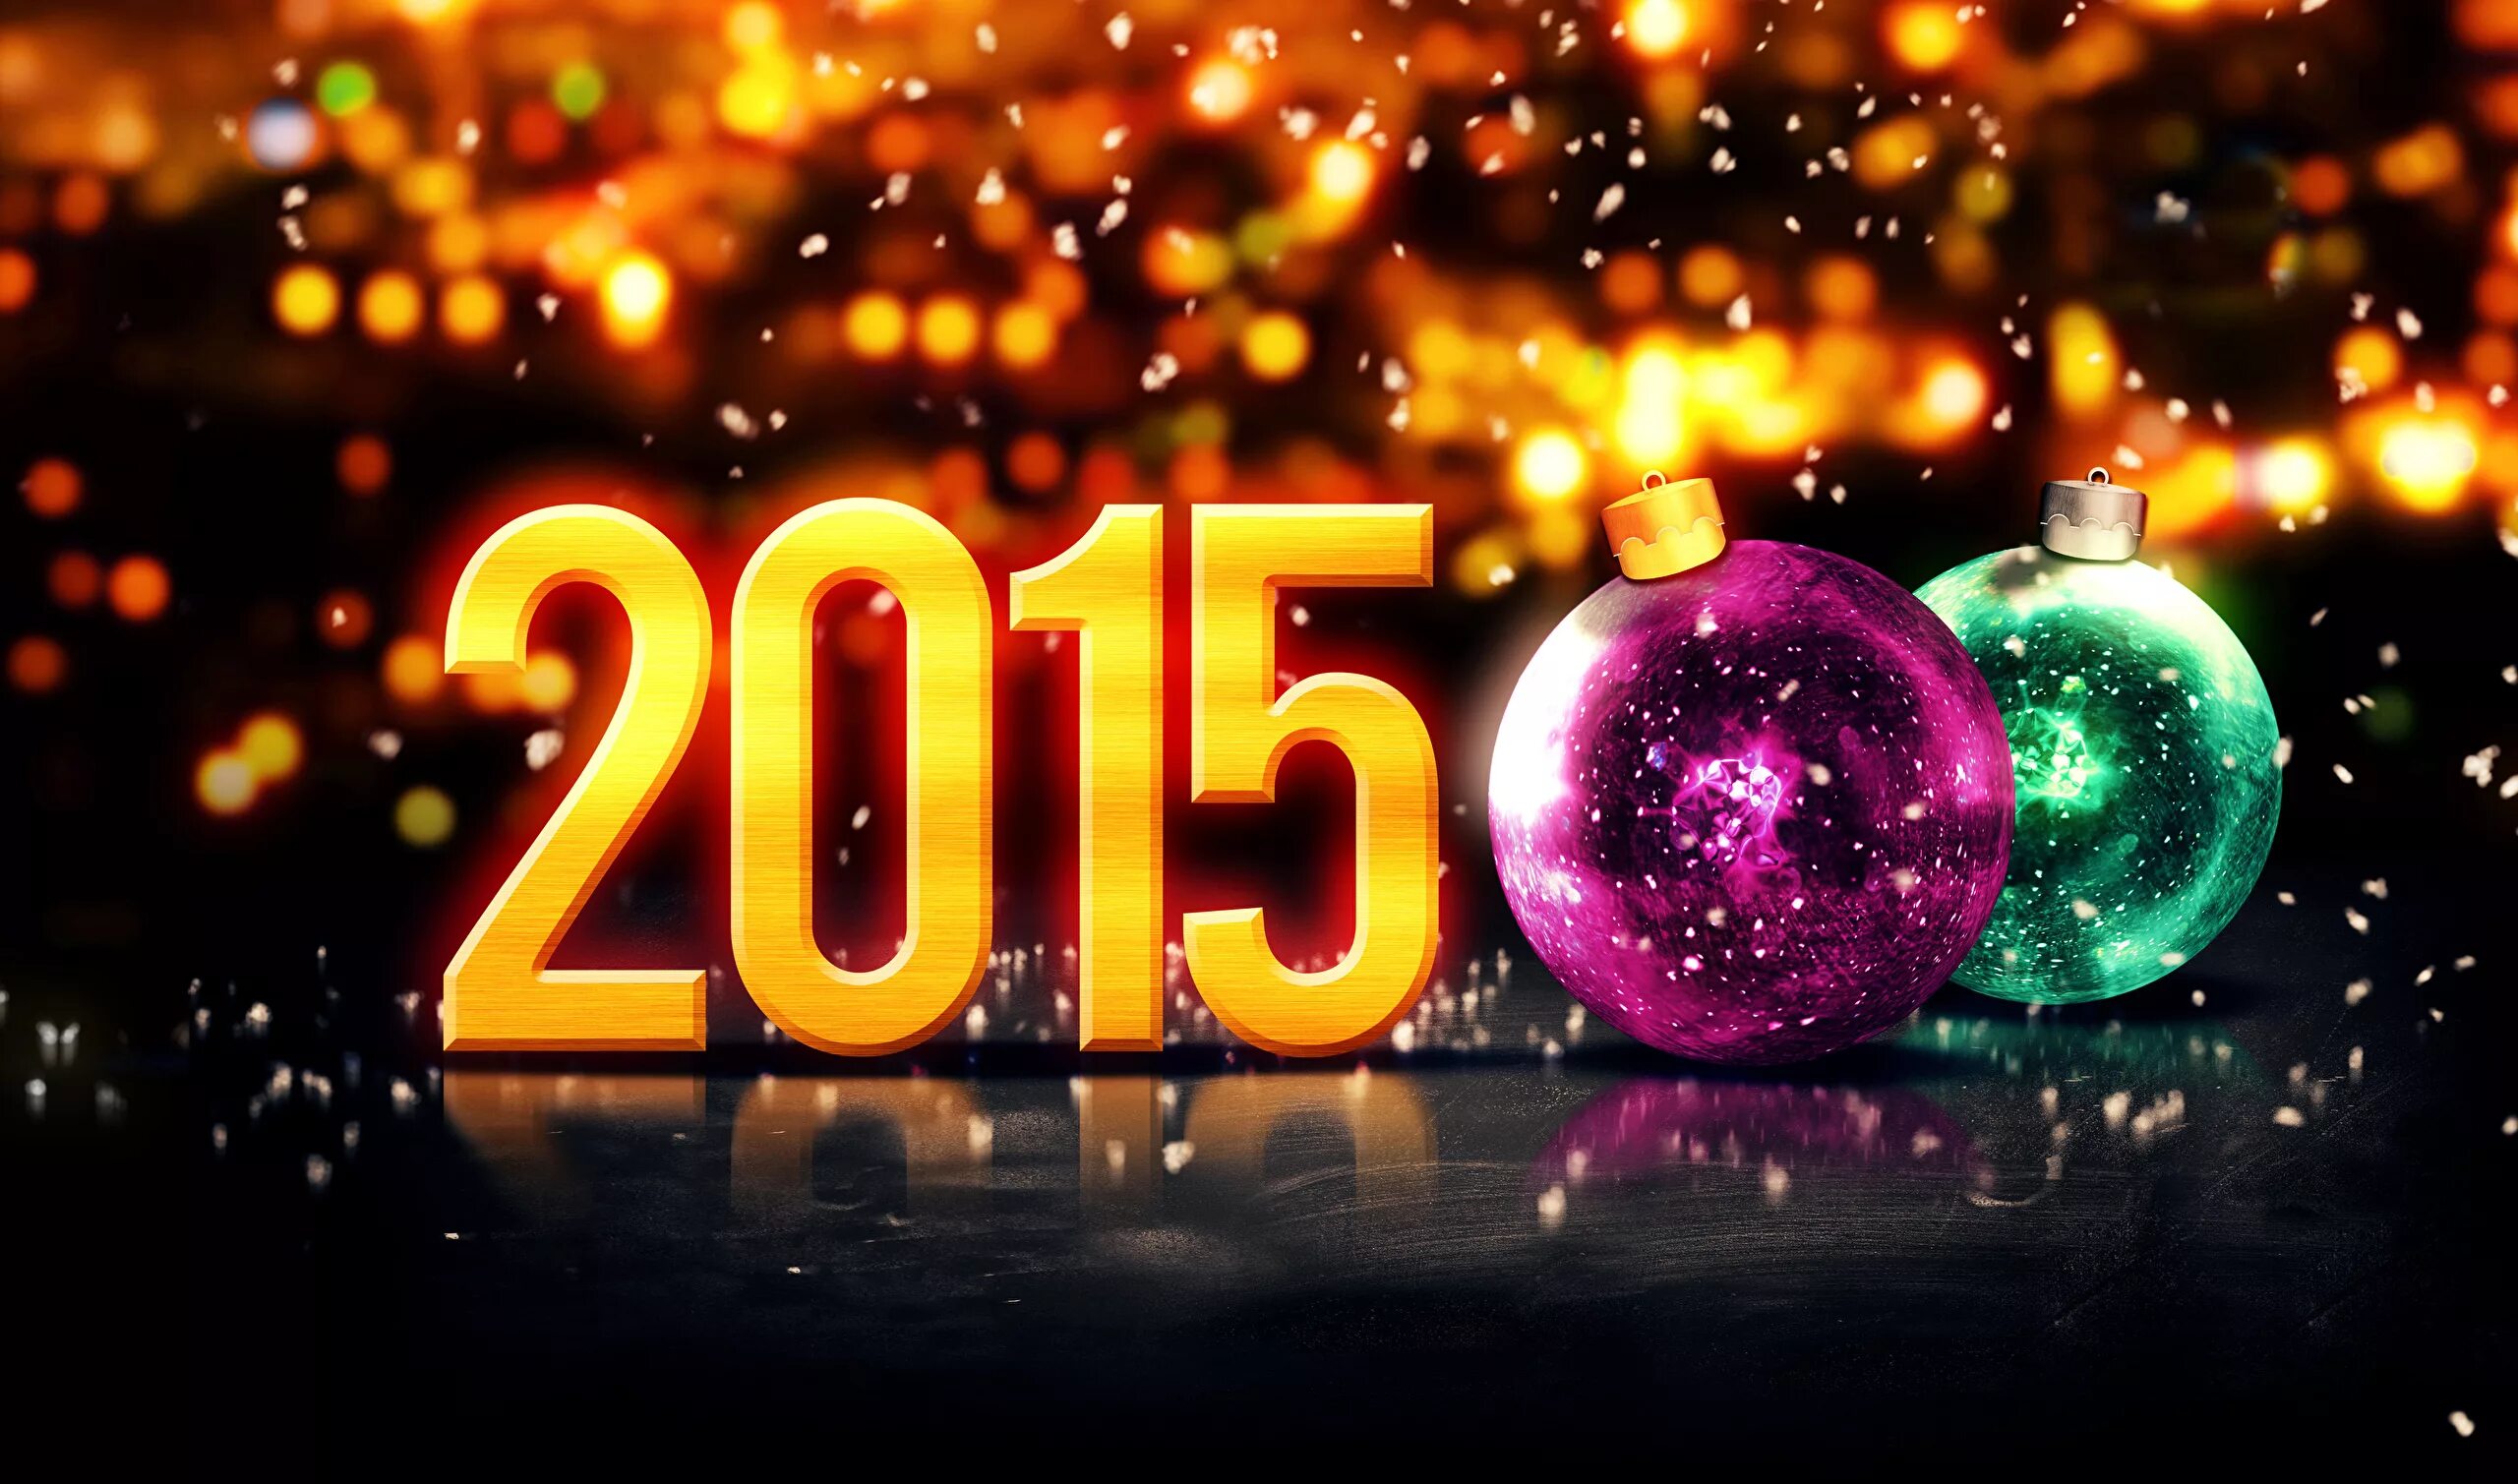 Фото 2015 года. Новый год 2015 год. Новый 2015. С новым годом 2015. Новый год 2015 картинки.